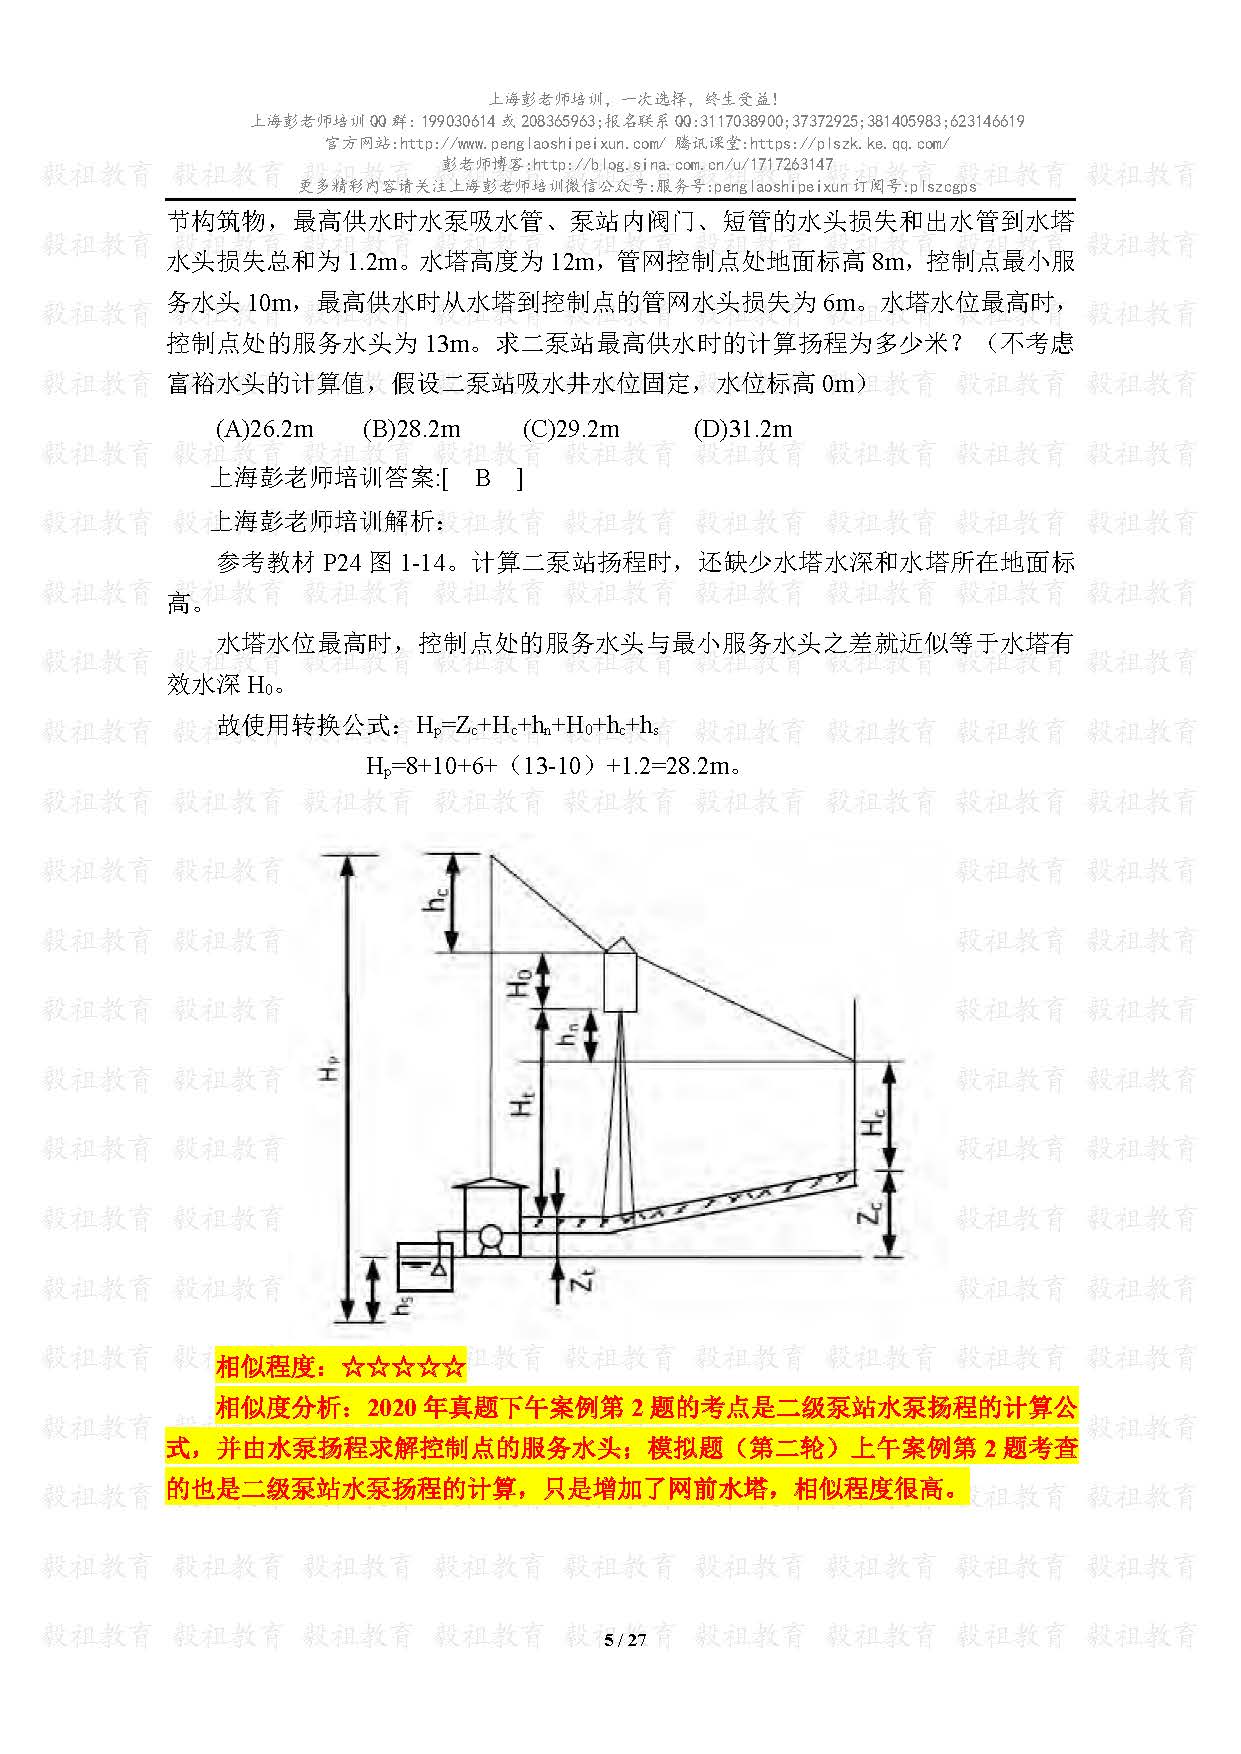 2020注册给排水考试真题与模考题相似度分析-上海彭老师培训_页面_05.jpg.jpg